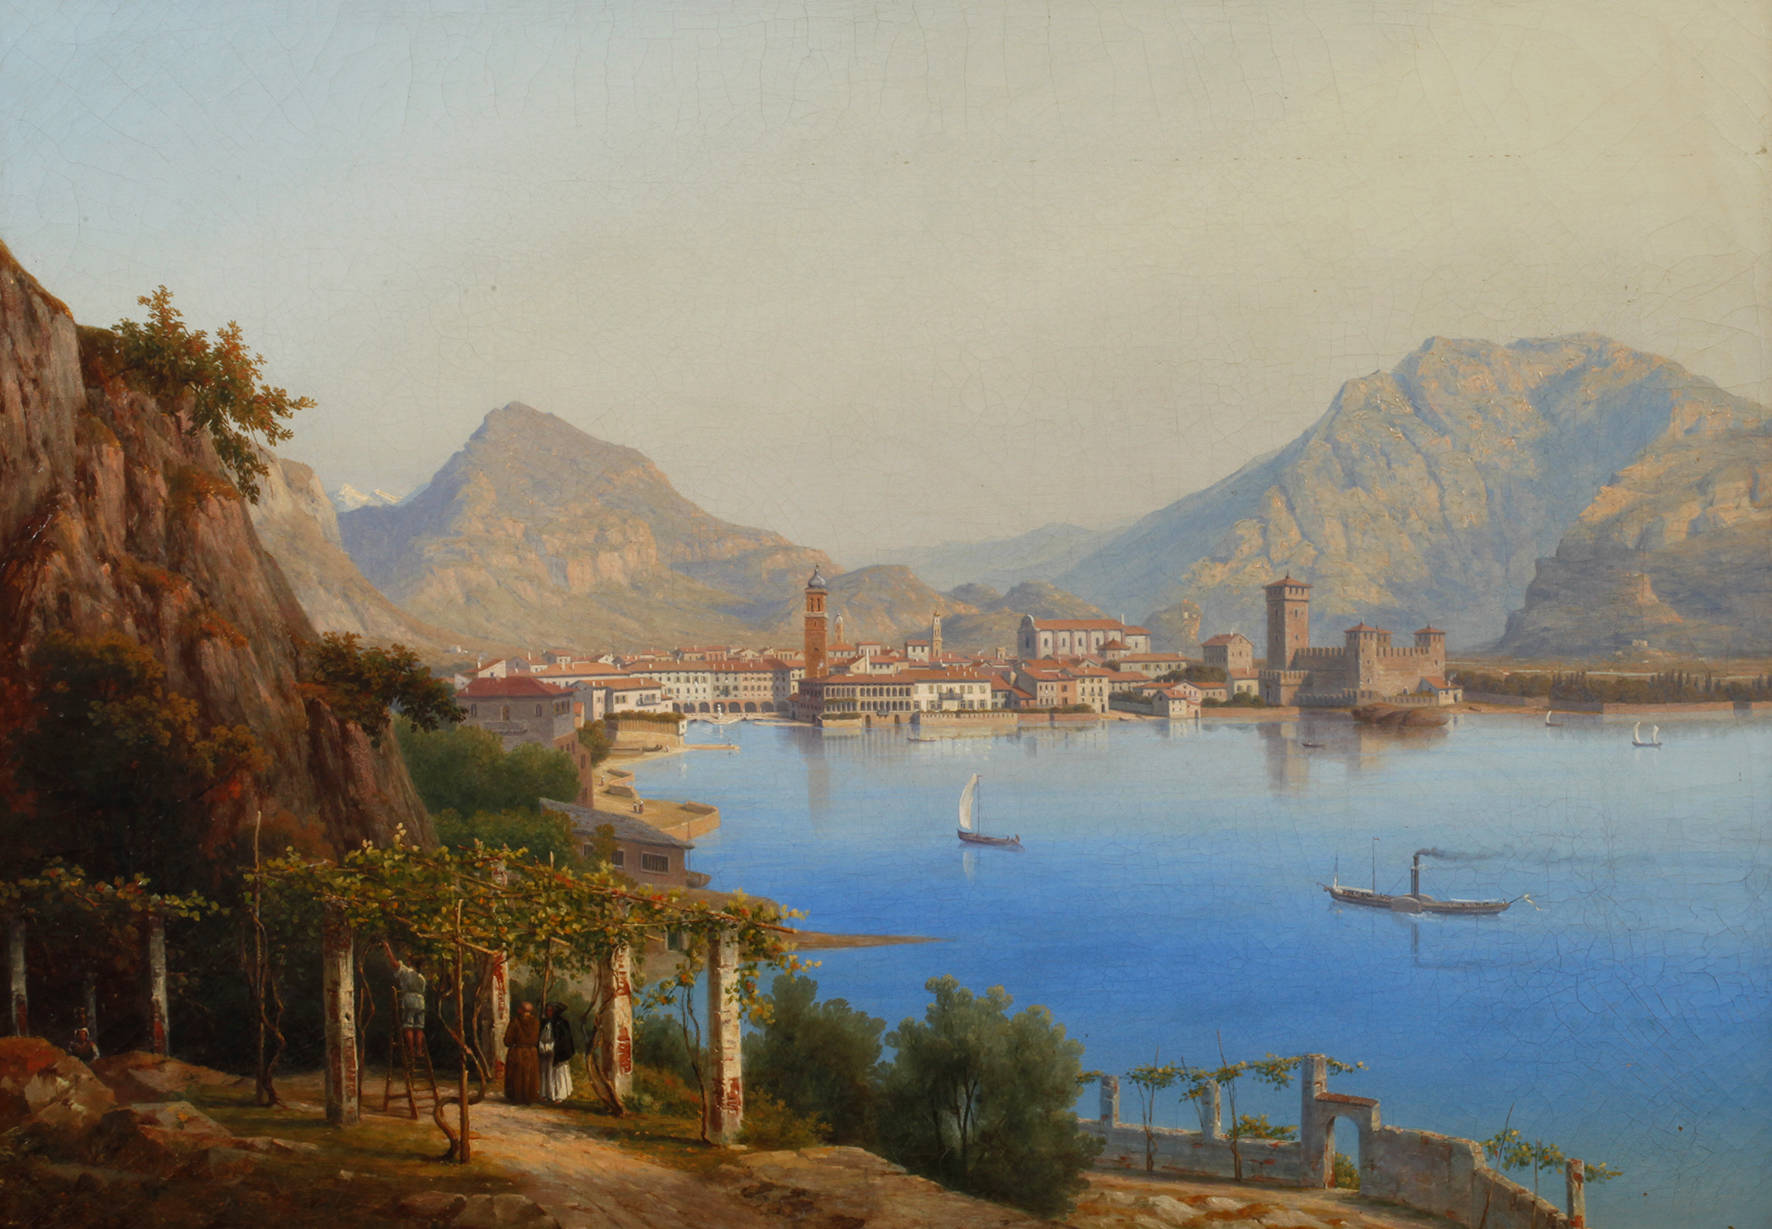 August Nothnagel, ”Riva am Gardasee”